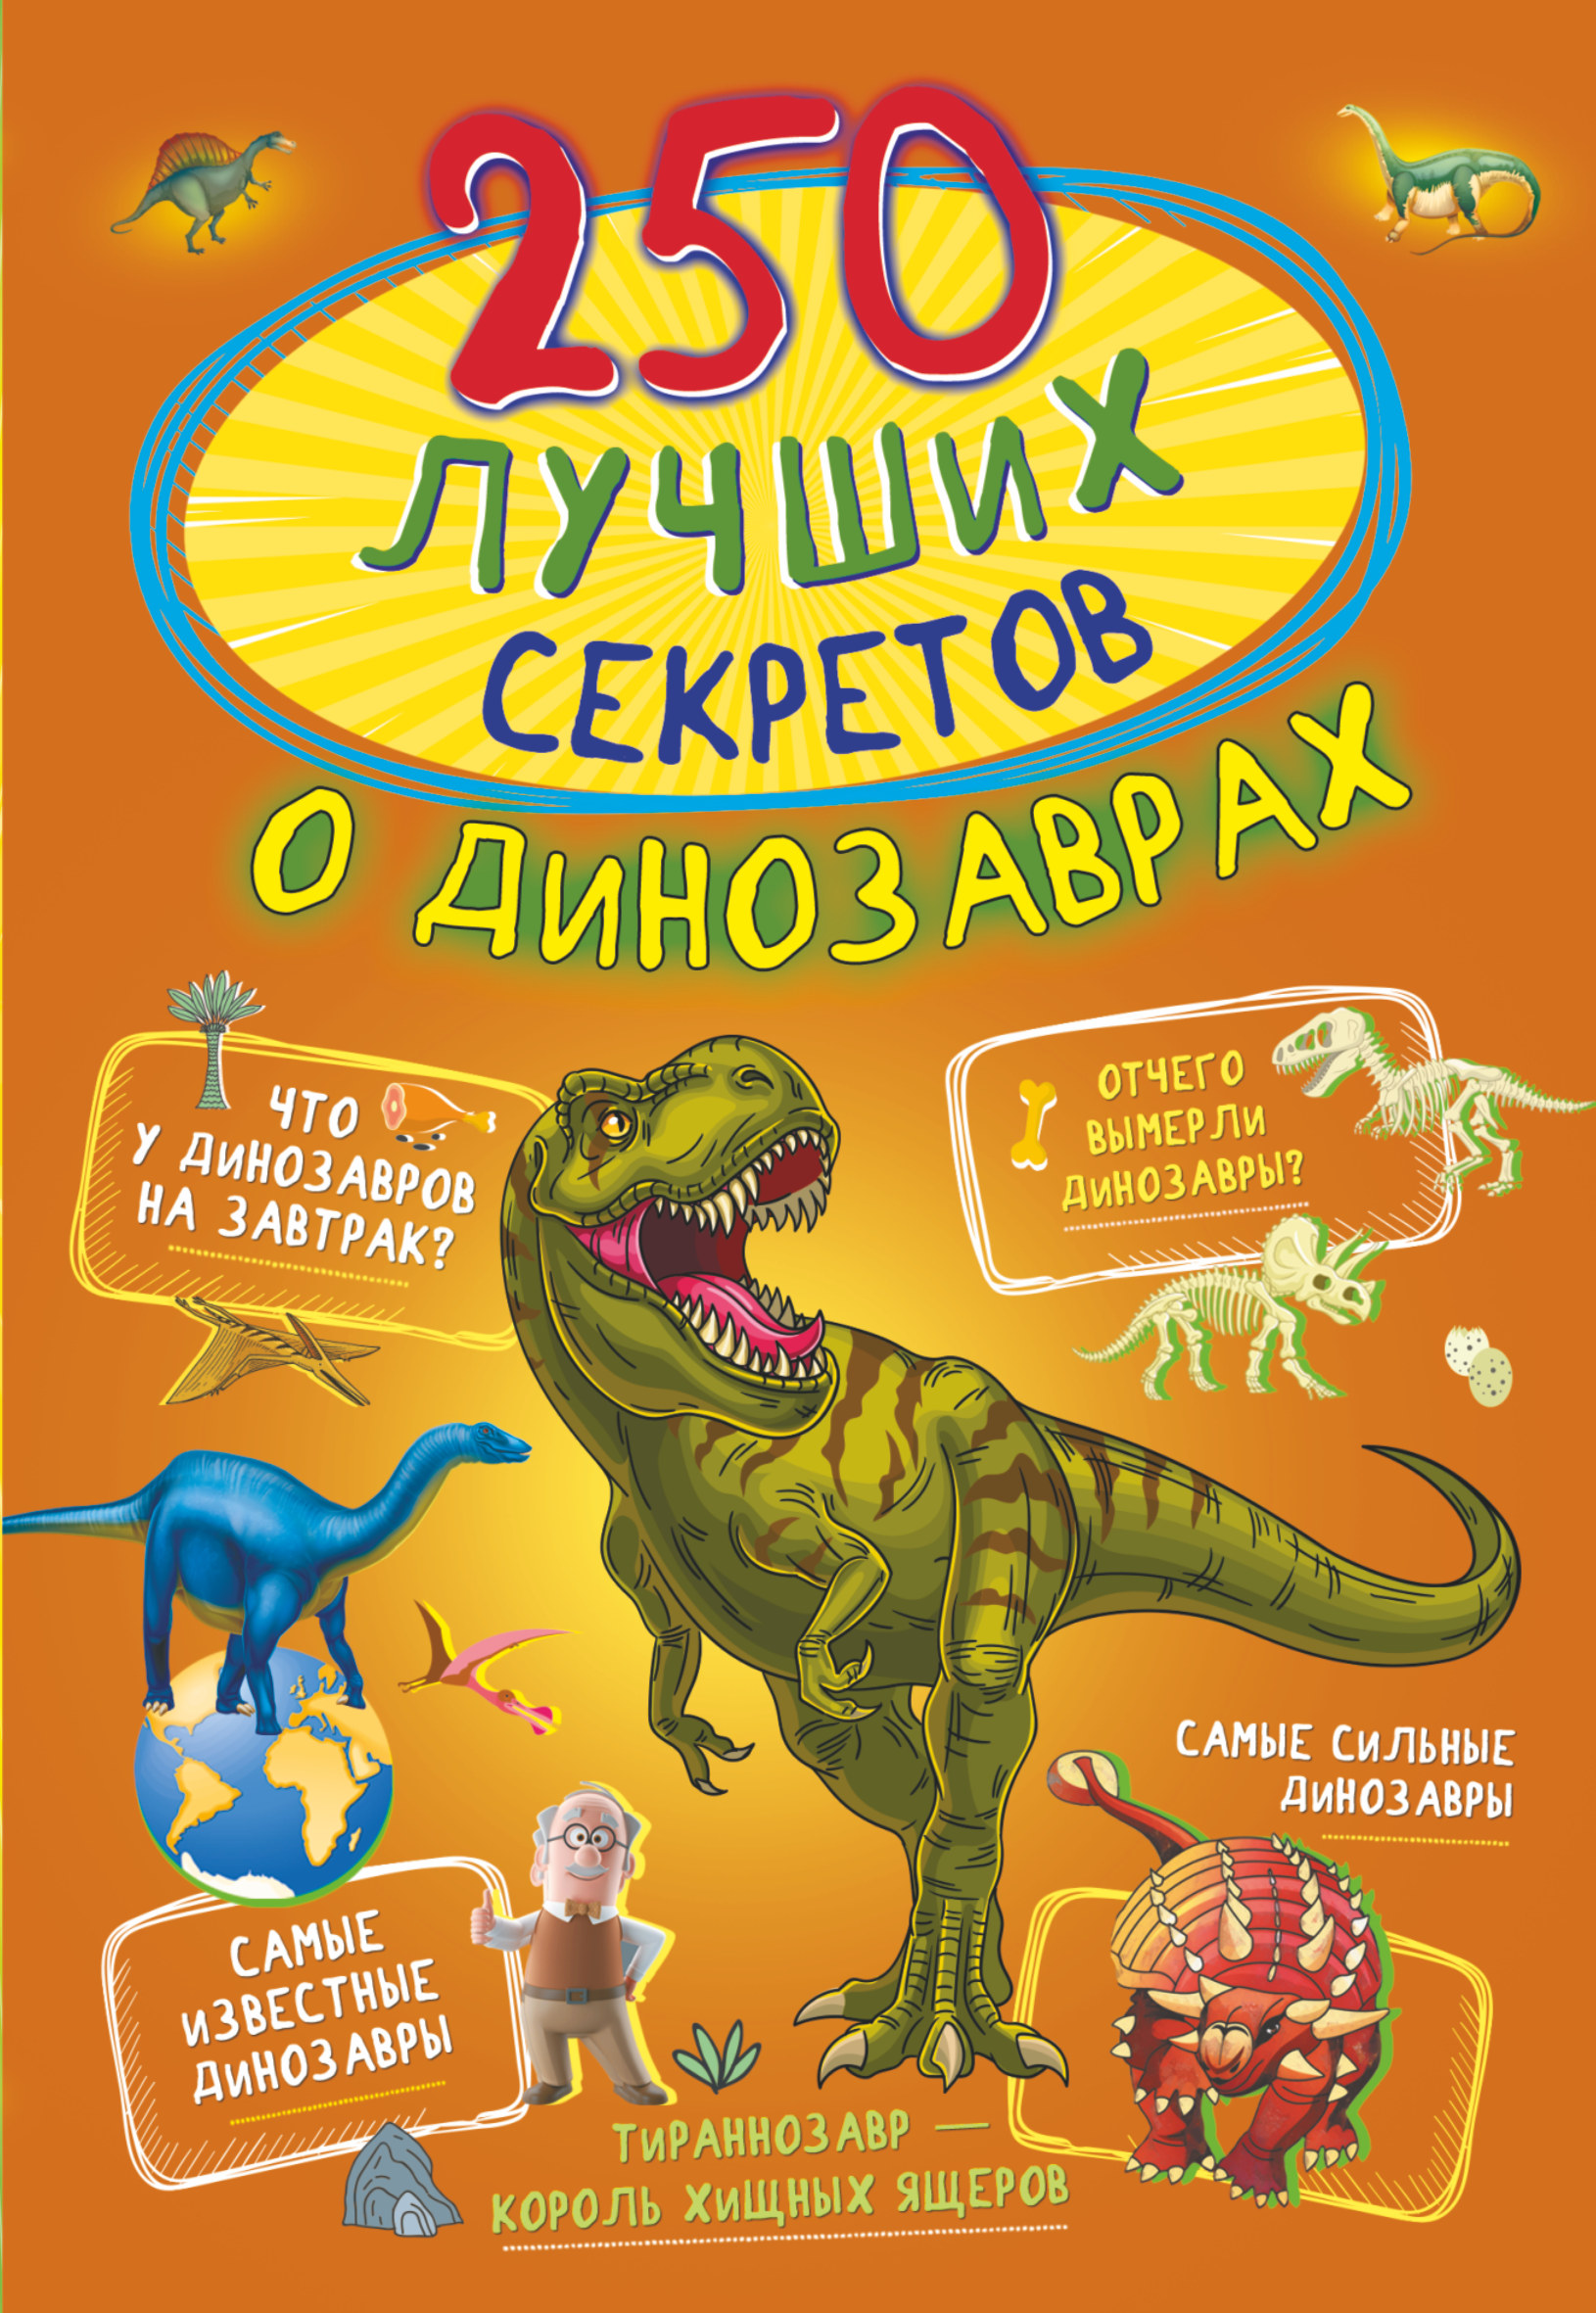 250 лучших секретов о динозаврах брилланте джузеппе все о динозаврах и других древних животных